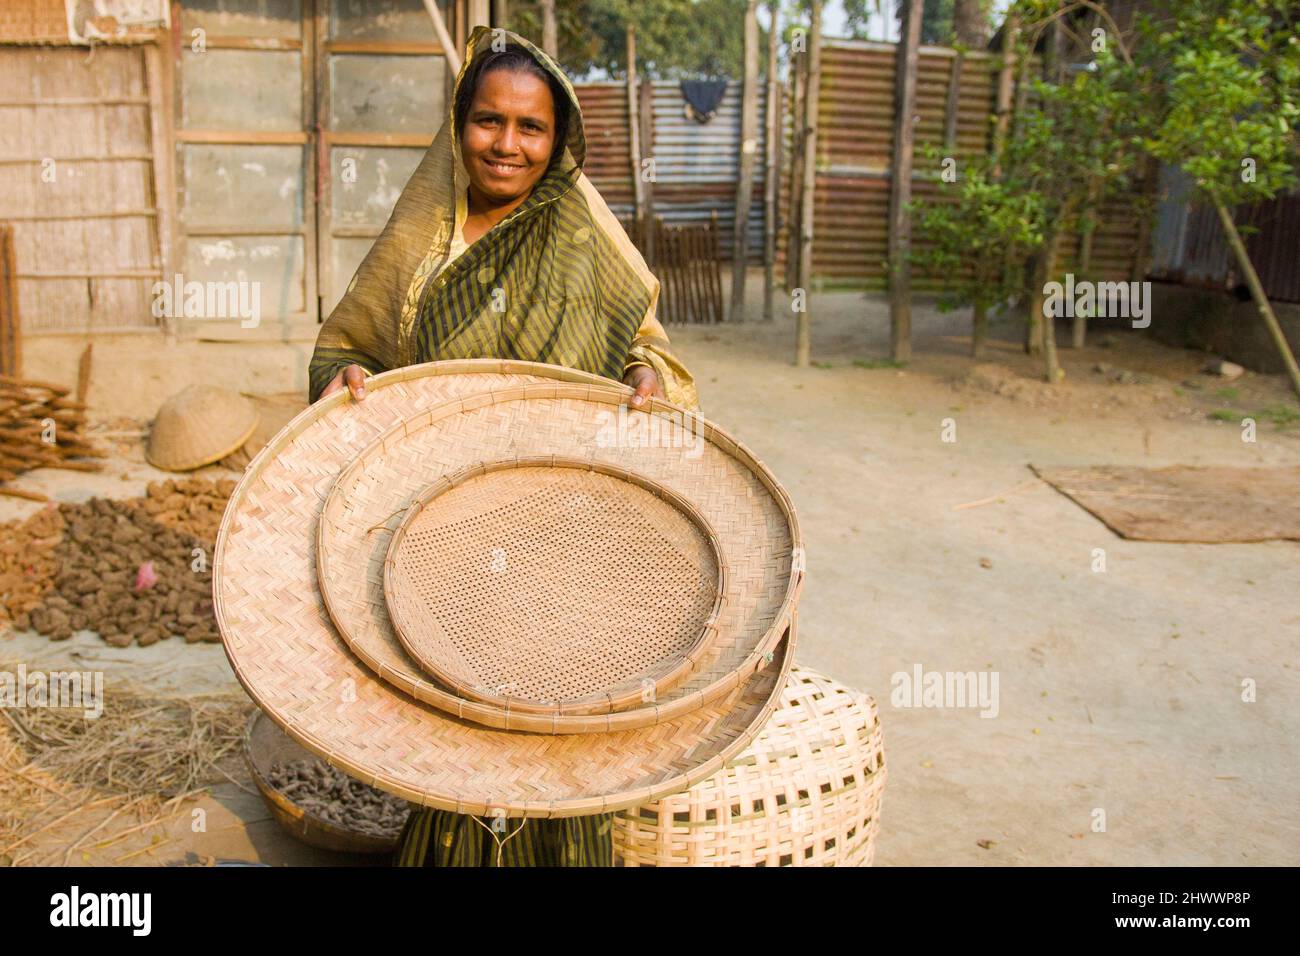 Eine Unternehmerin zeigt ihren Korb aus Bambus im Distrikt Netrkona in Bangladesch. Es hilft auch anderen Frauen, Geld zu verdienen. Stockfoto